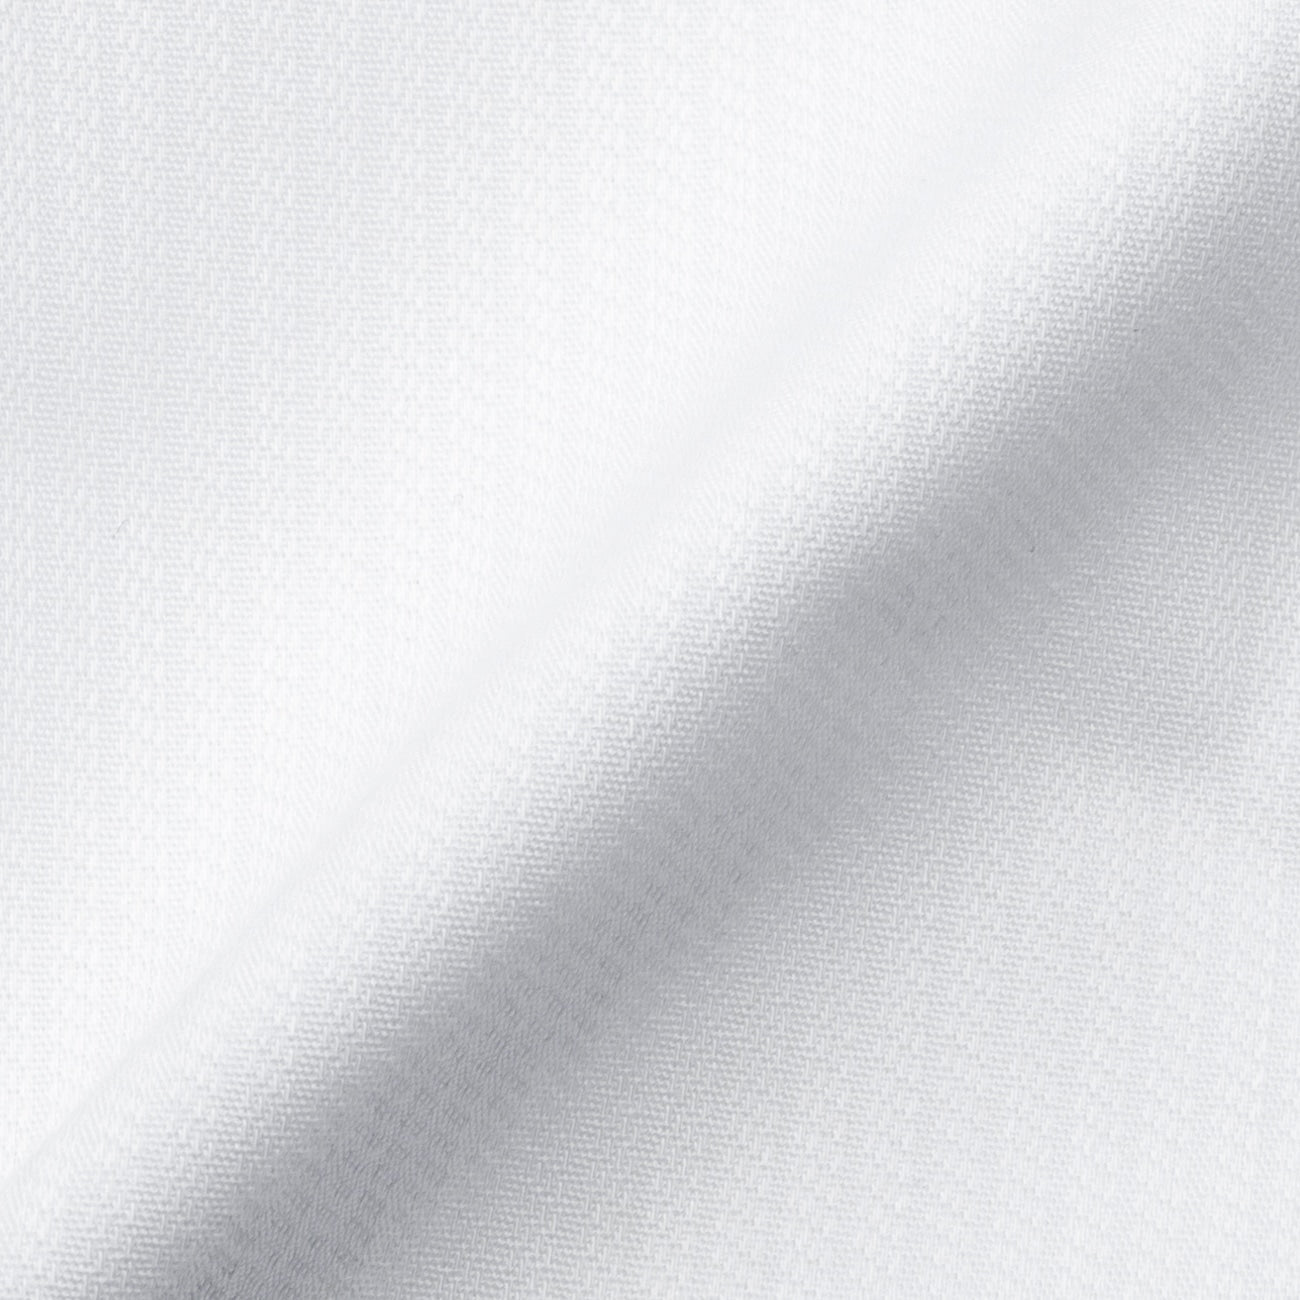 MAJI 免烫衬衫纯棉弹性白色梭织图常规领 - 修身版型